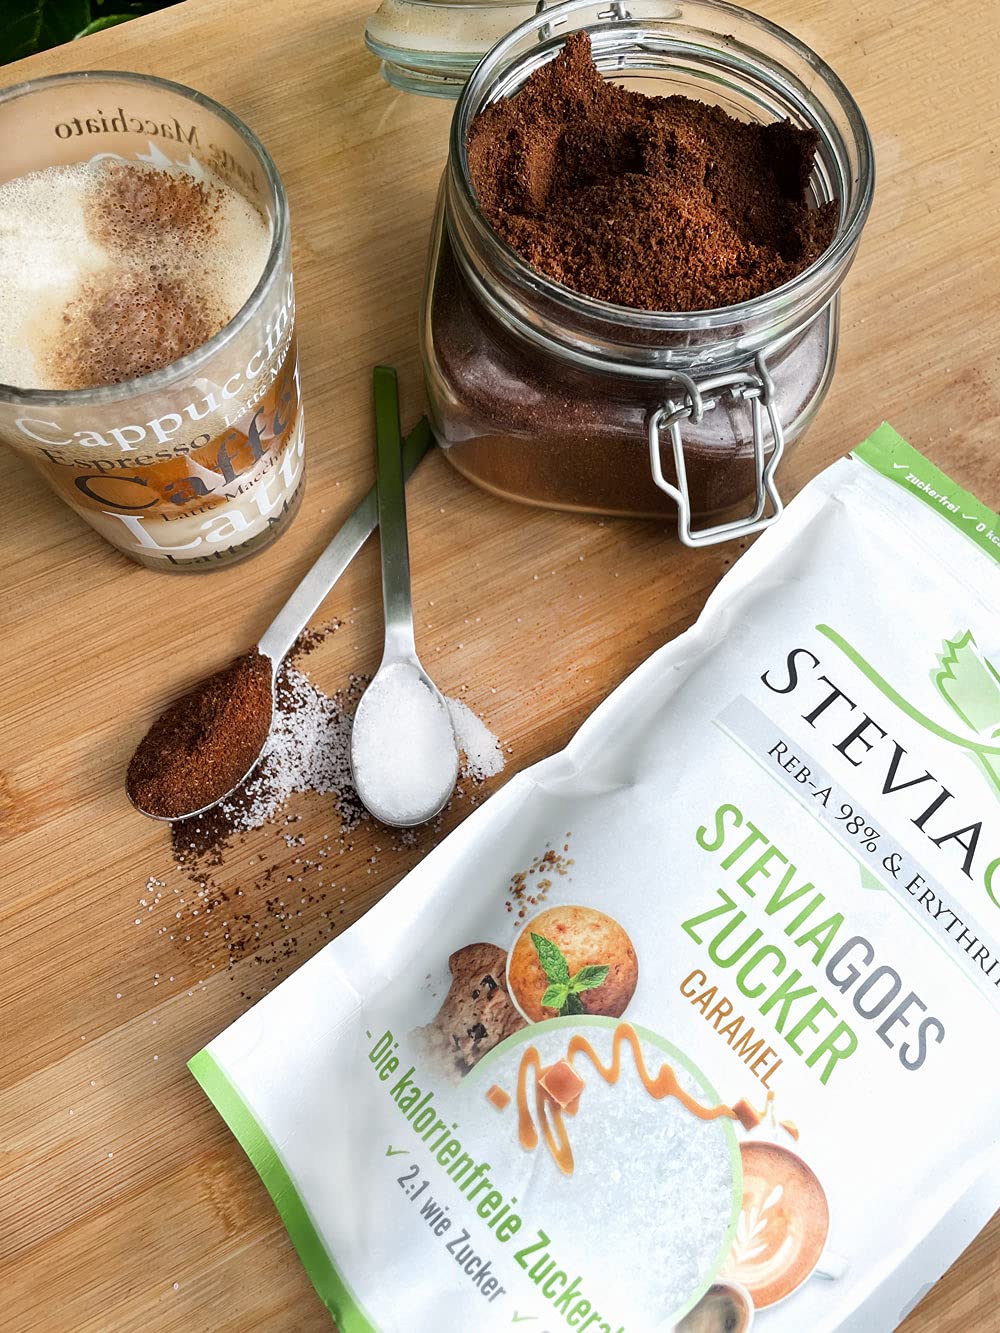 STEVIAGOES Zucker - Caramel 500g - Erythrit und Stevia mit Karamellaroma